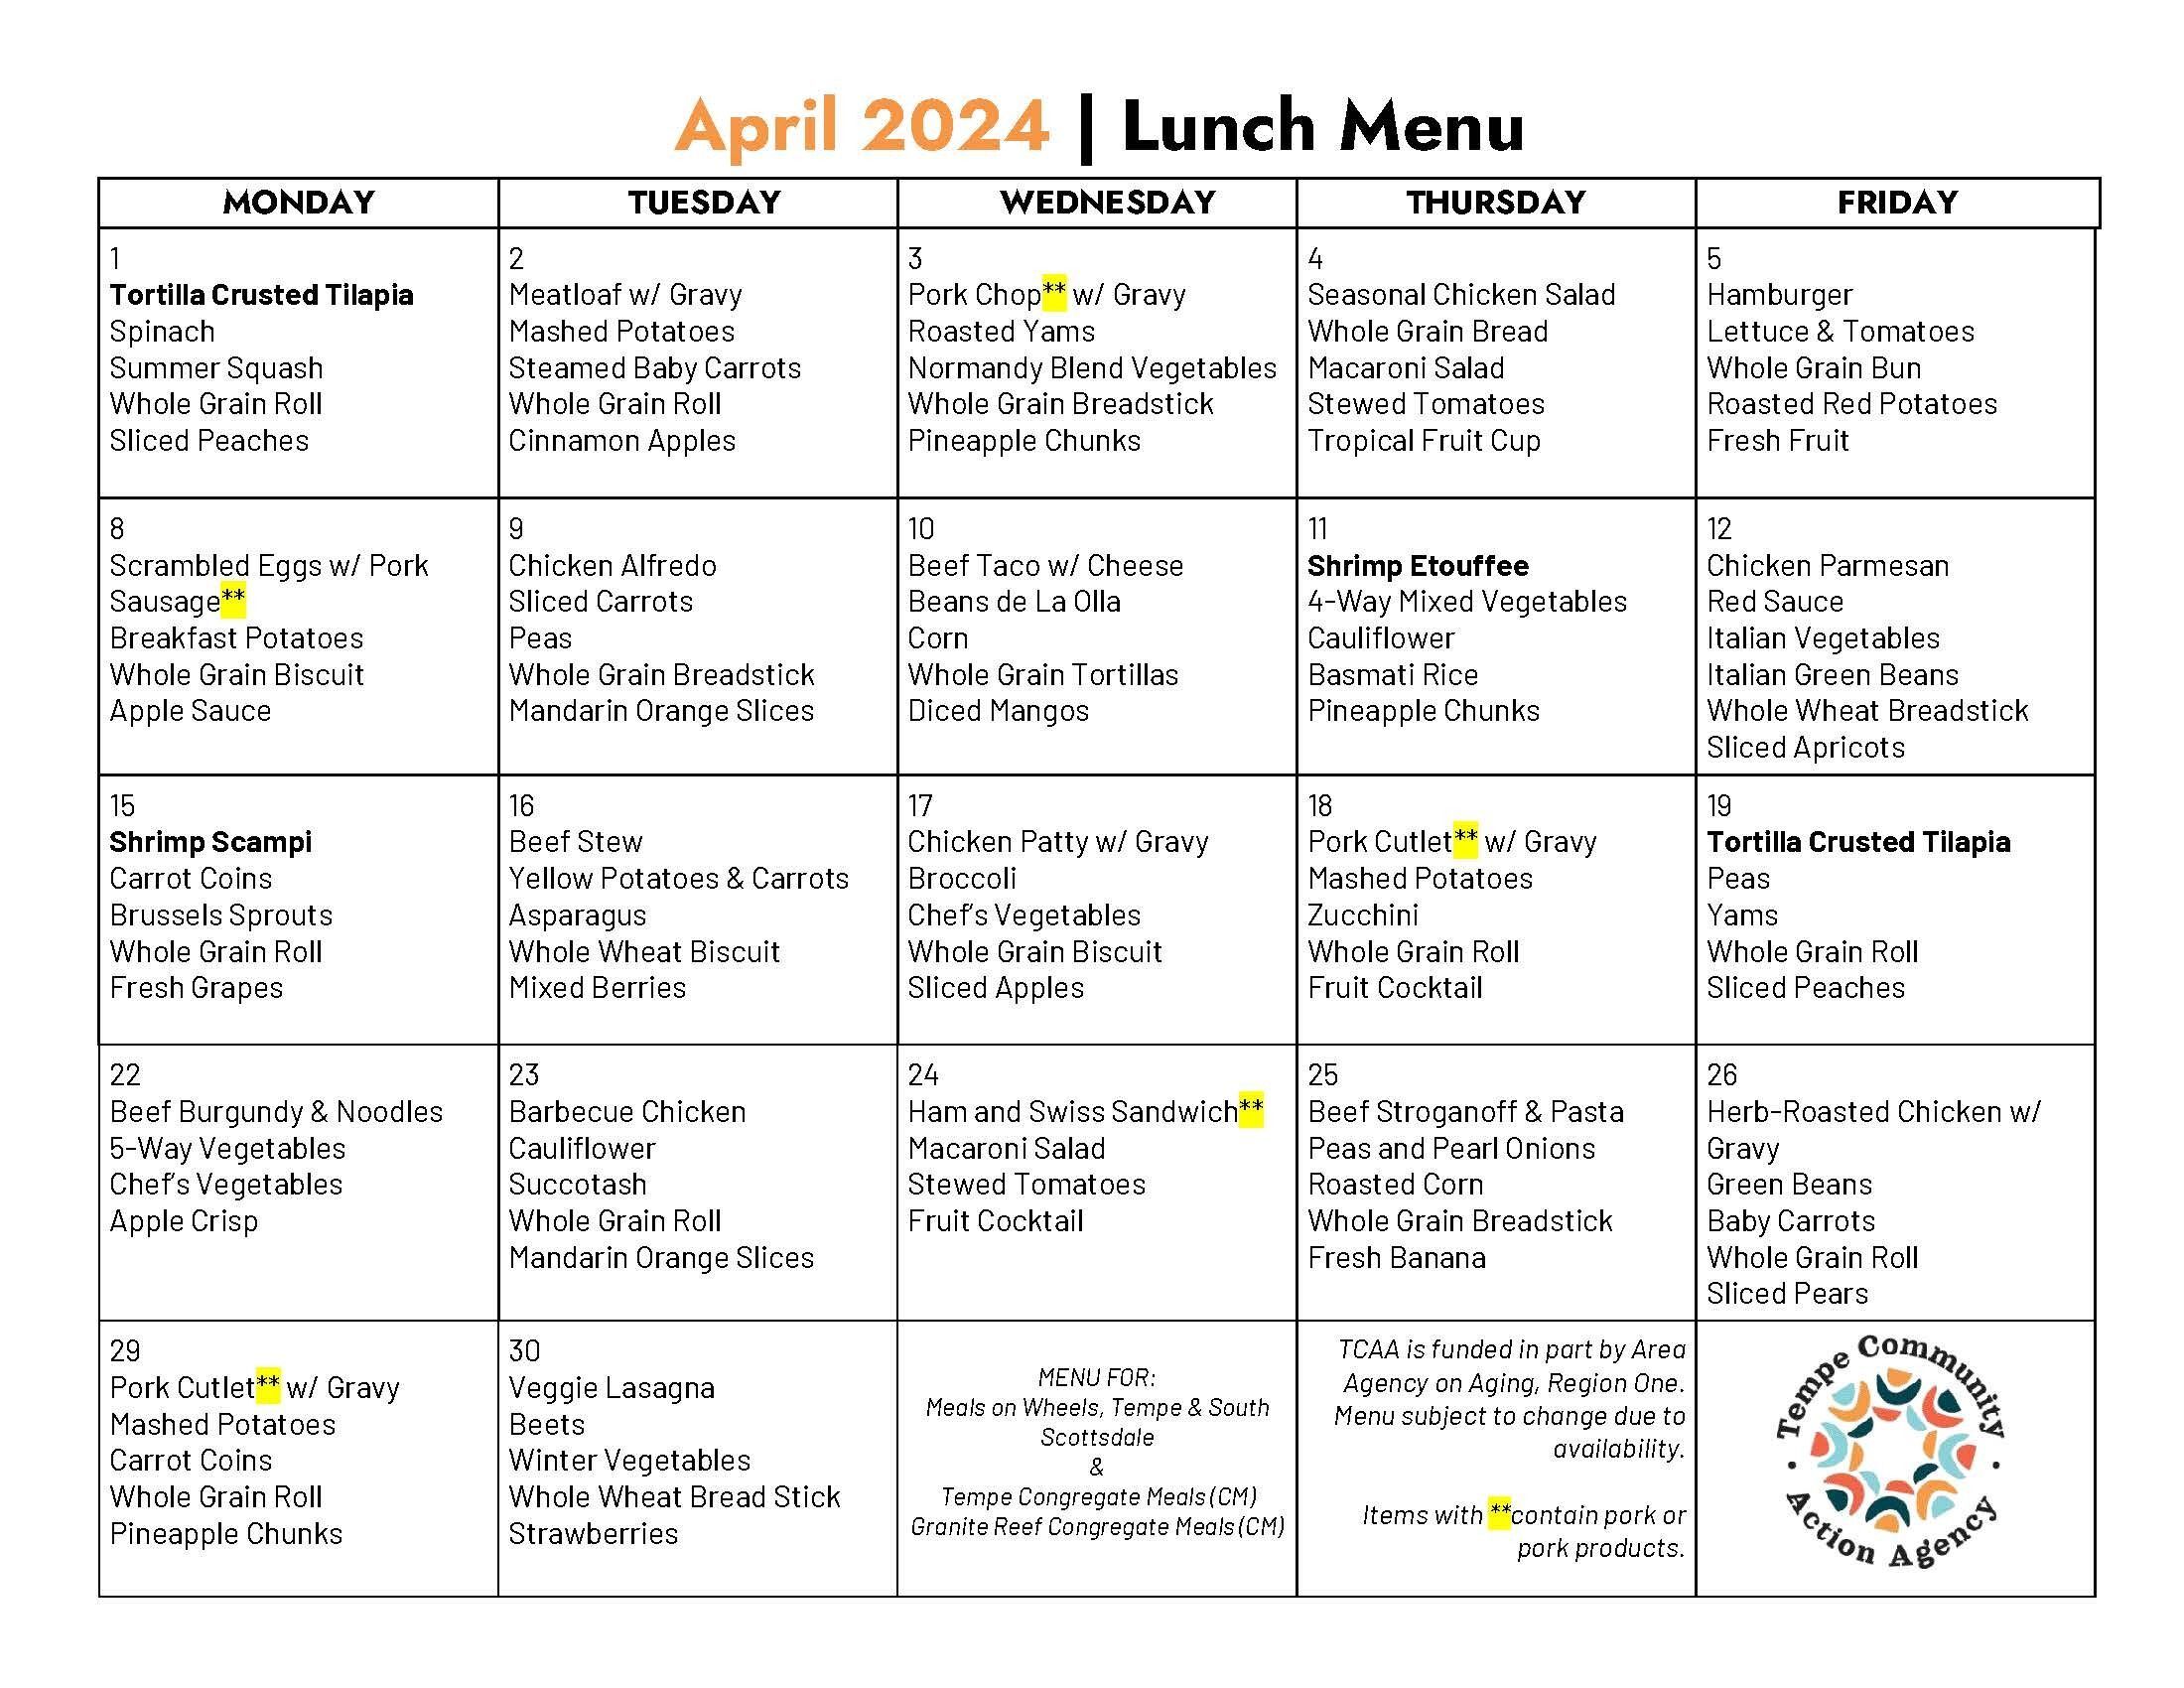 April Meal Calendar